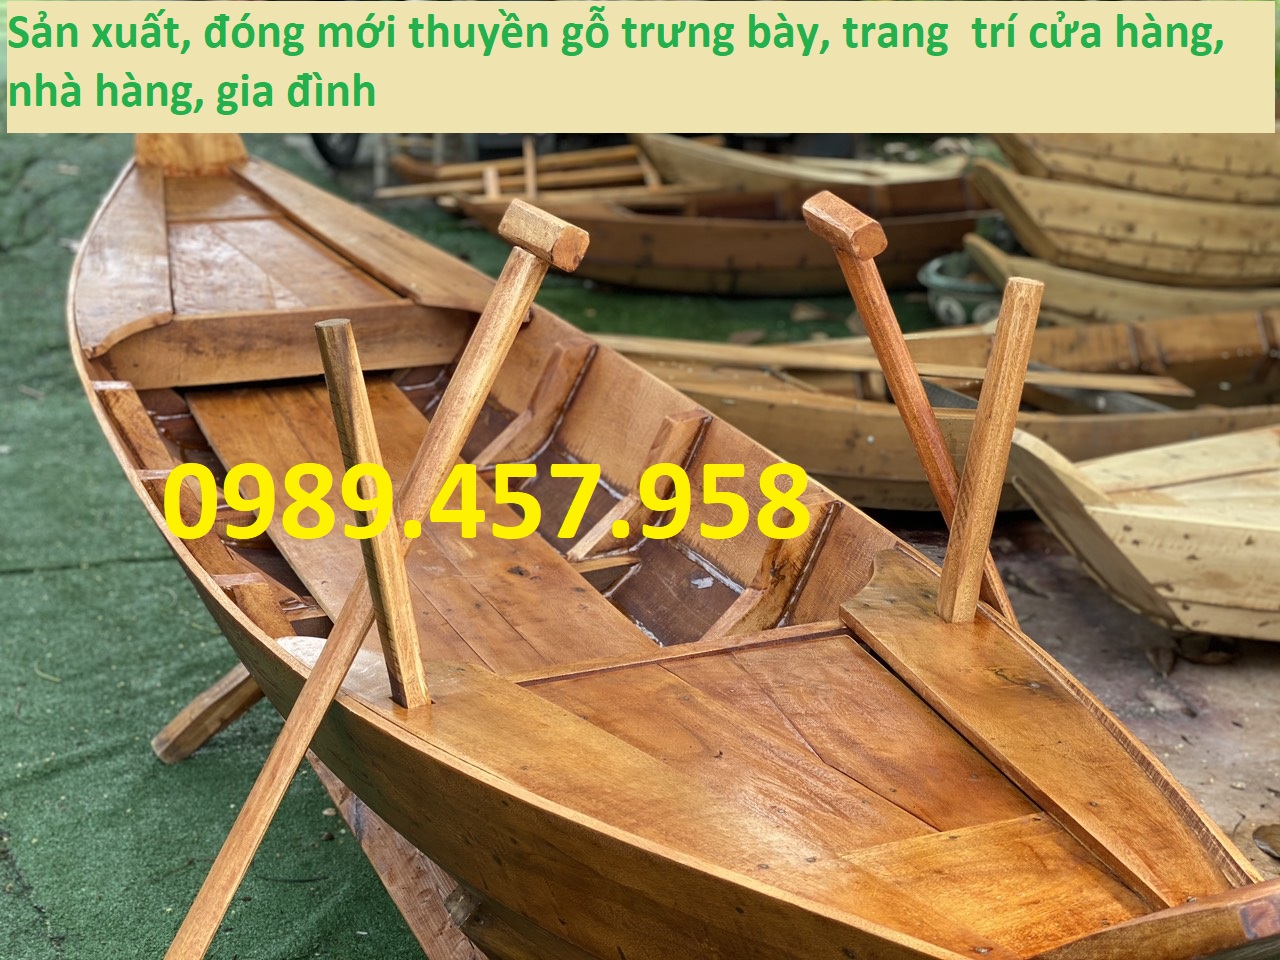 Thuyền gỗ: Những bức ảnh về thuyền gỗ đầy sức hút và thơ mộng sẽ khiến bạn chìm đắm vào không gian yên tĩnh và đẹp như tranh.